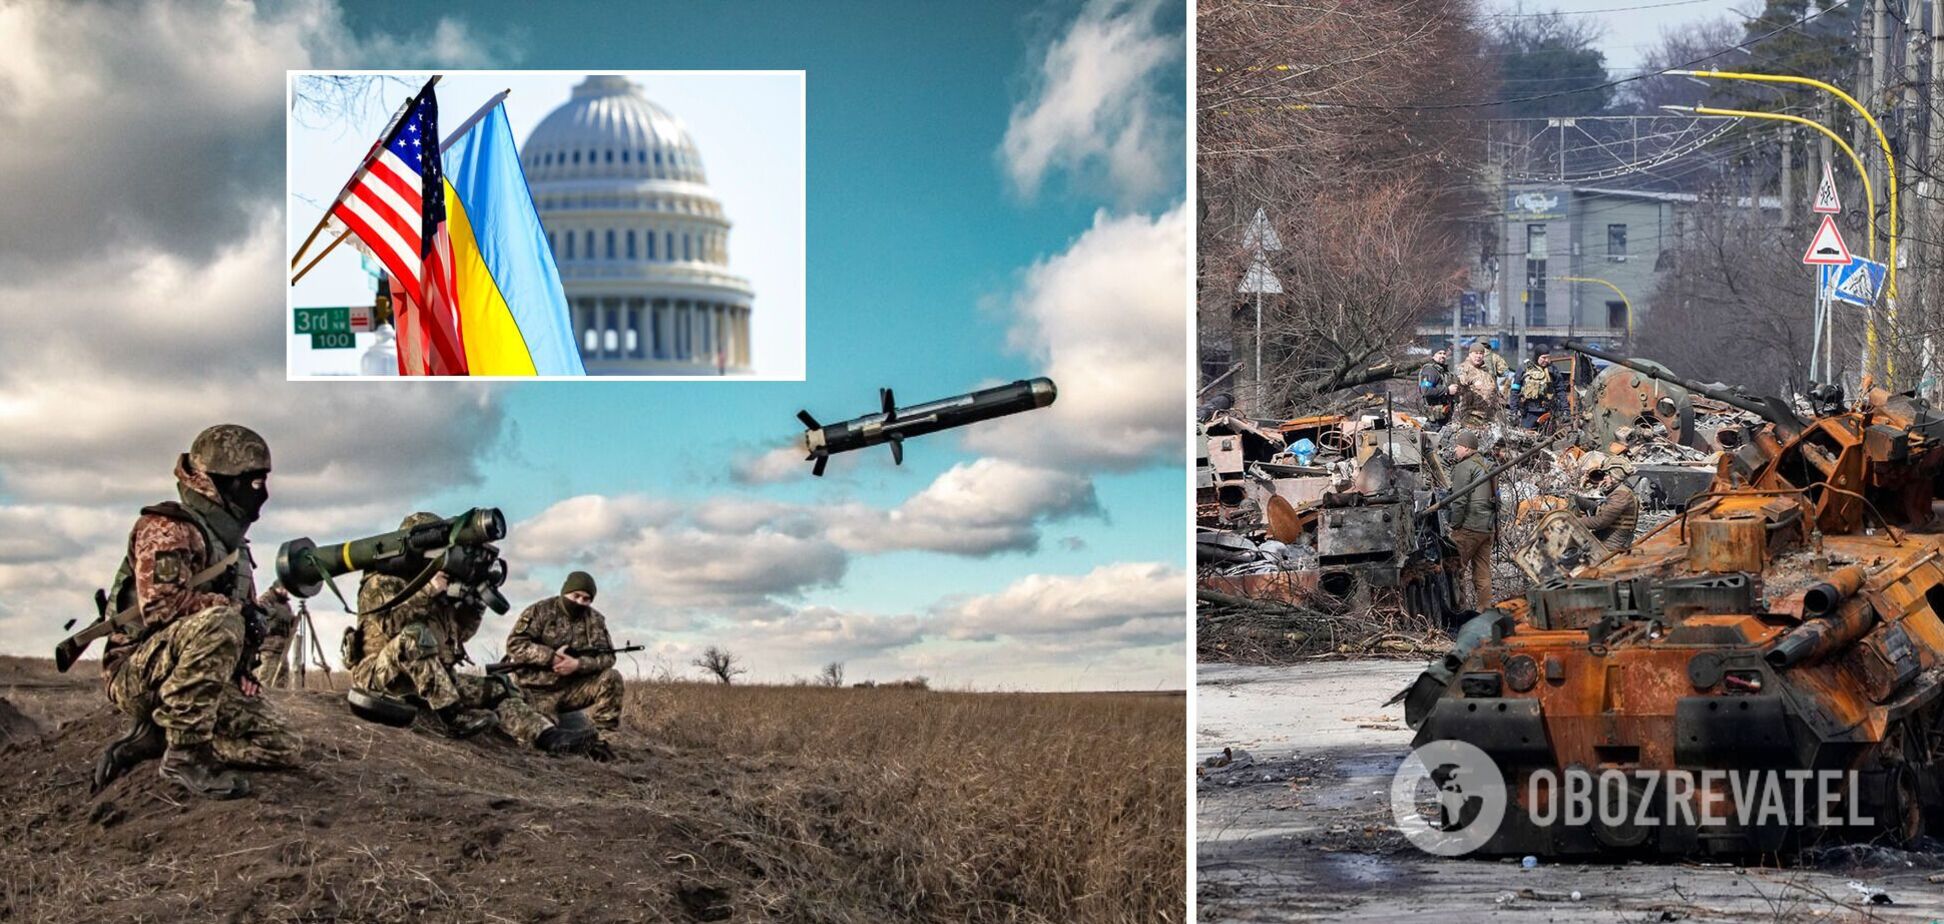 Ракетные системы большой дальности и крупнокалиберное оружие: США объявили о новой военной помощи Украине на $700 млн